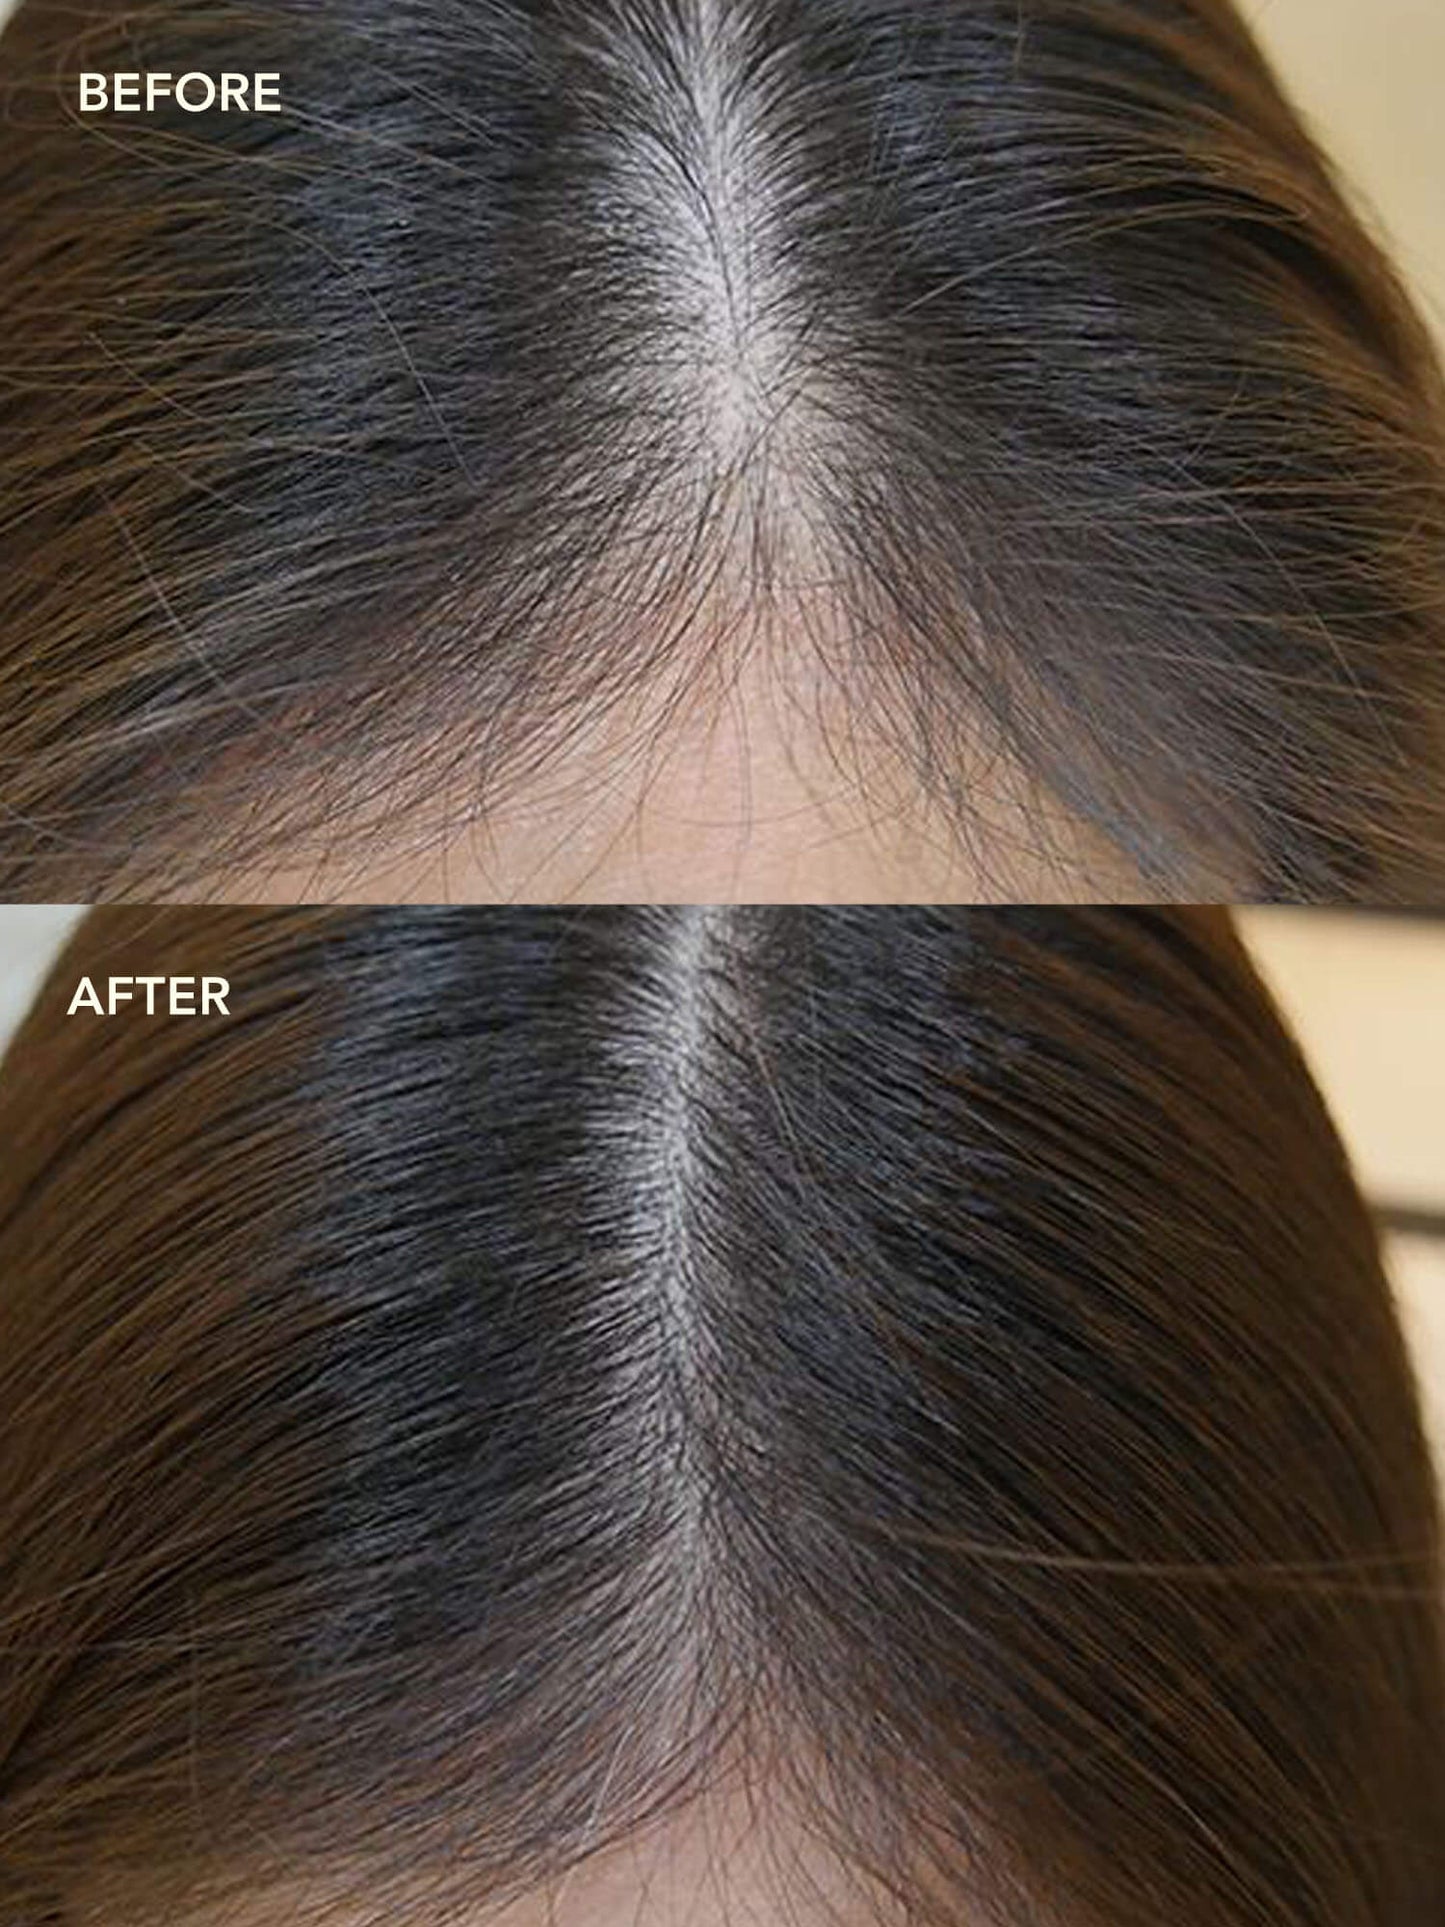 SHIKAKAI + BHRINGRAJ Stimulating Scalp Serum for Hair Growth